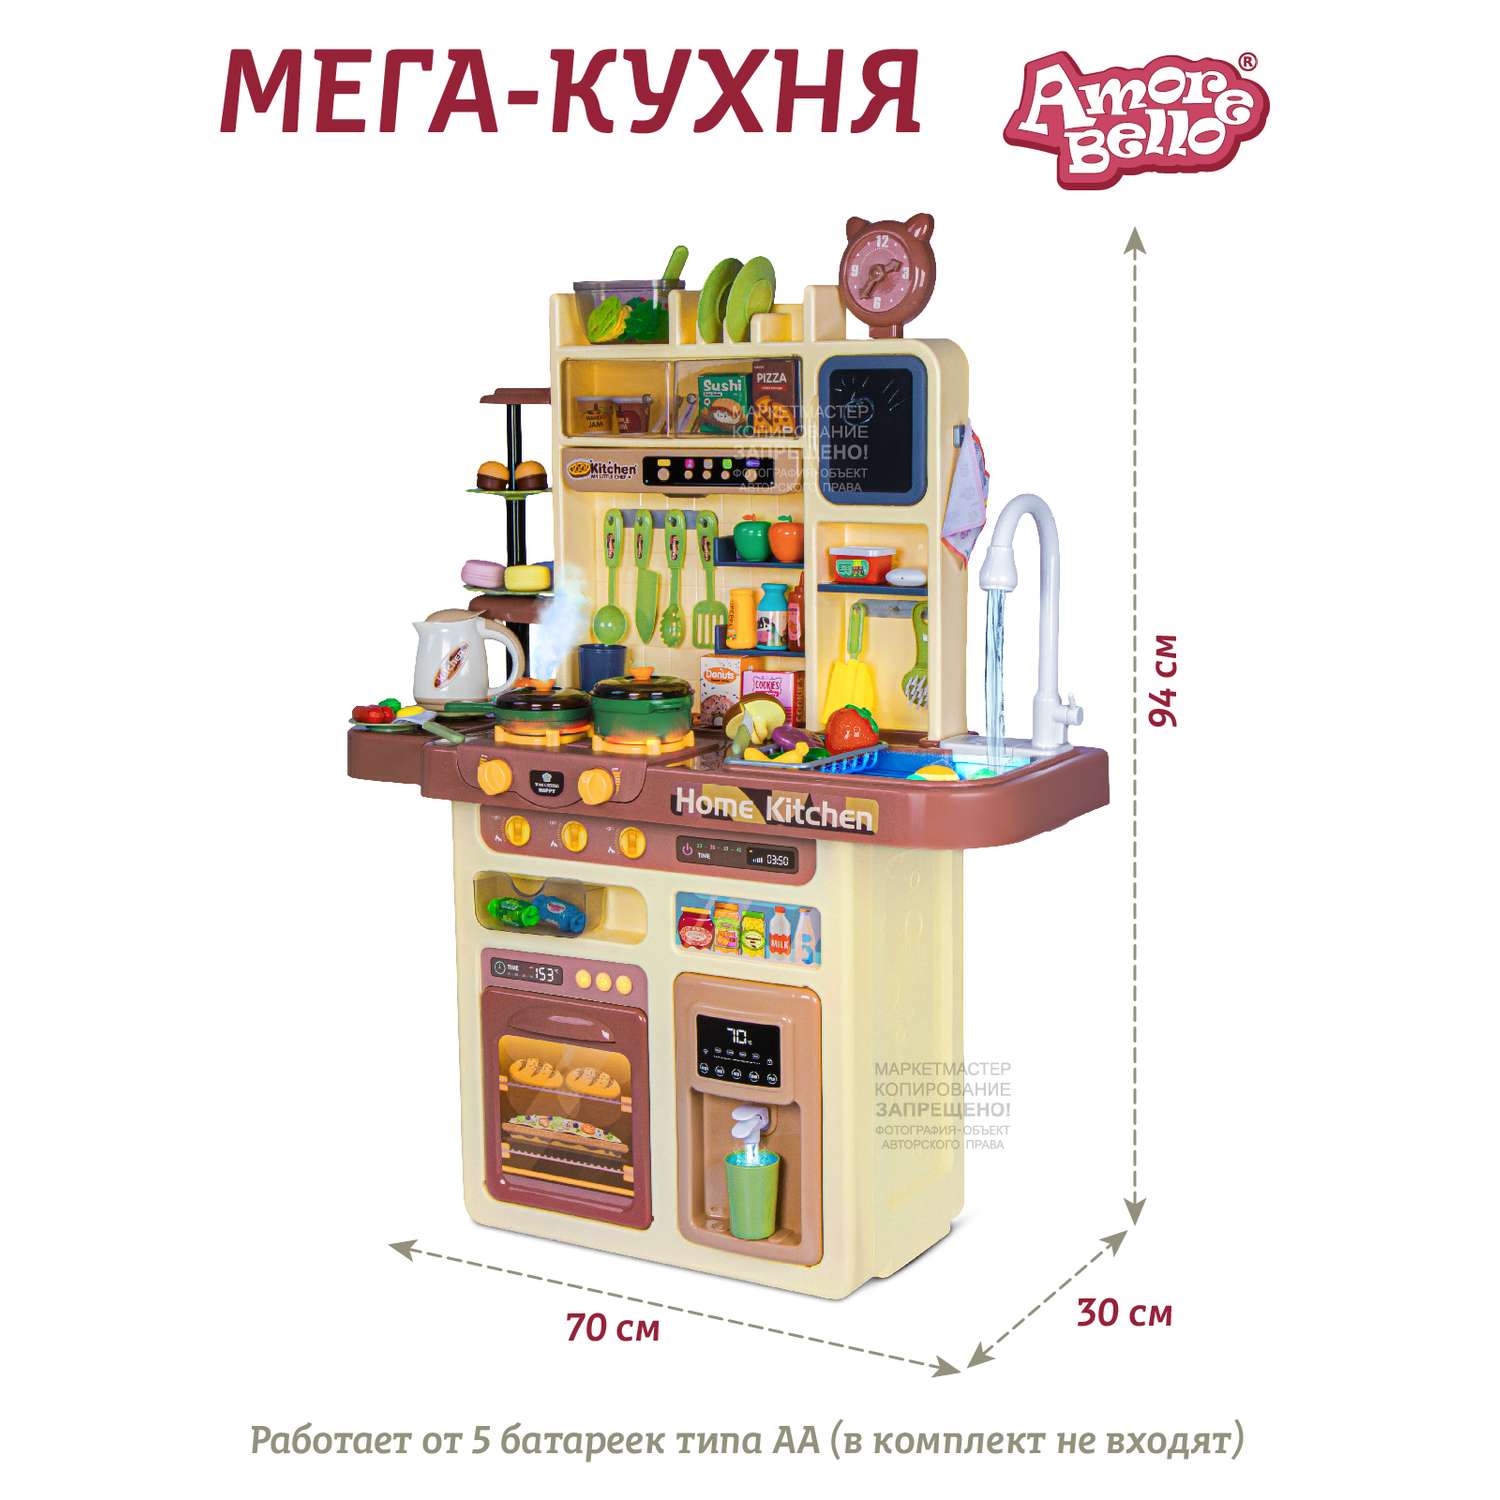 Игровой набор детский AMORE BELLO Кухня со световыми и звуковыми эффектами паром кран-помпа - фото 6